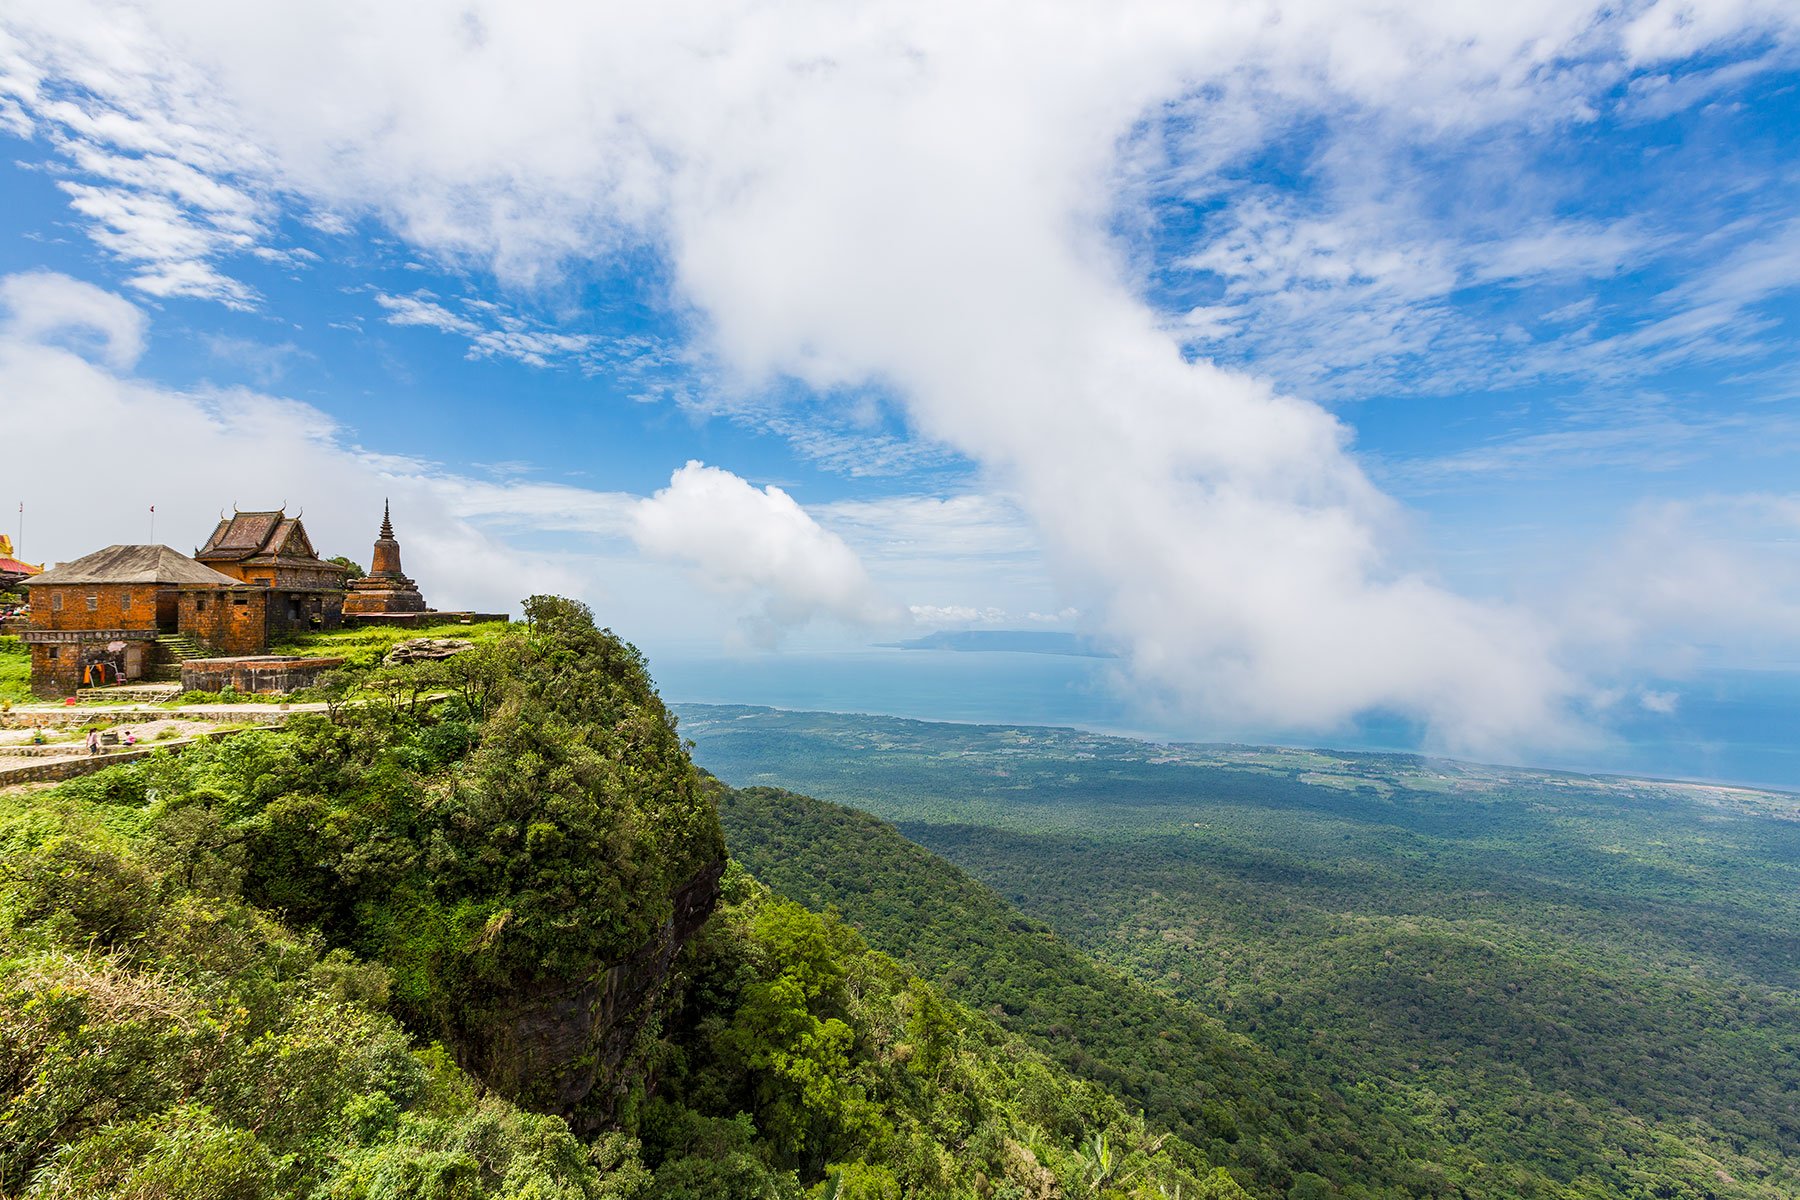 Tour Campuchia 3N3Đ: Thỏa sức khám phá cao nguyên Bokor - đảo Kohrong  Saloem đầy sắc màu - iVIVU.com